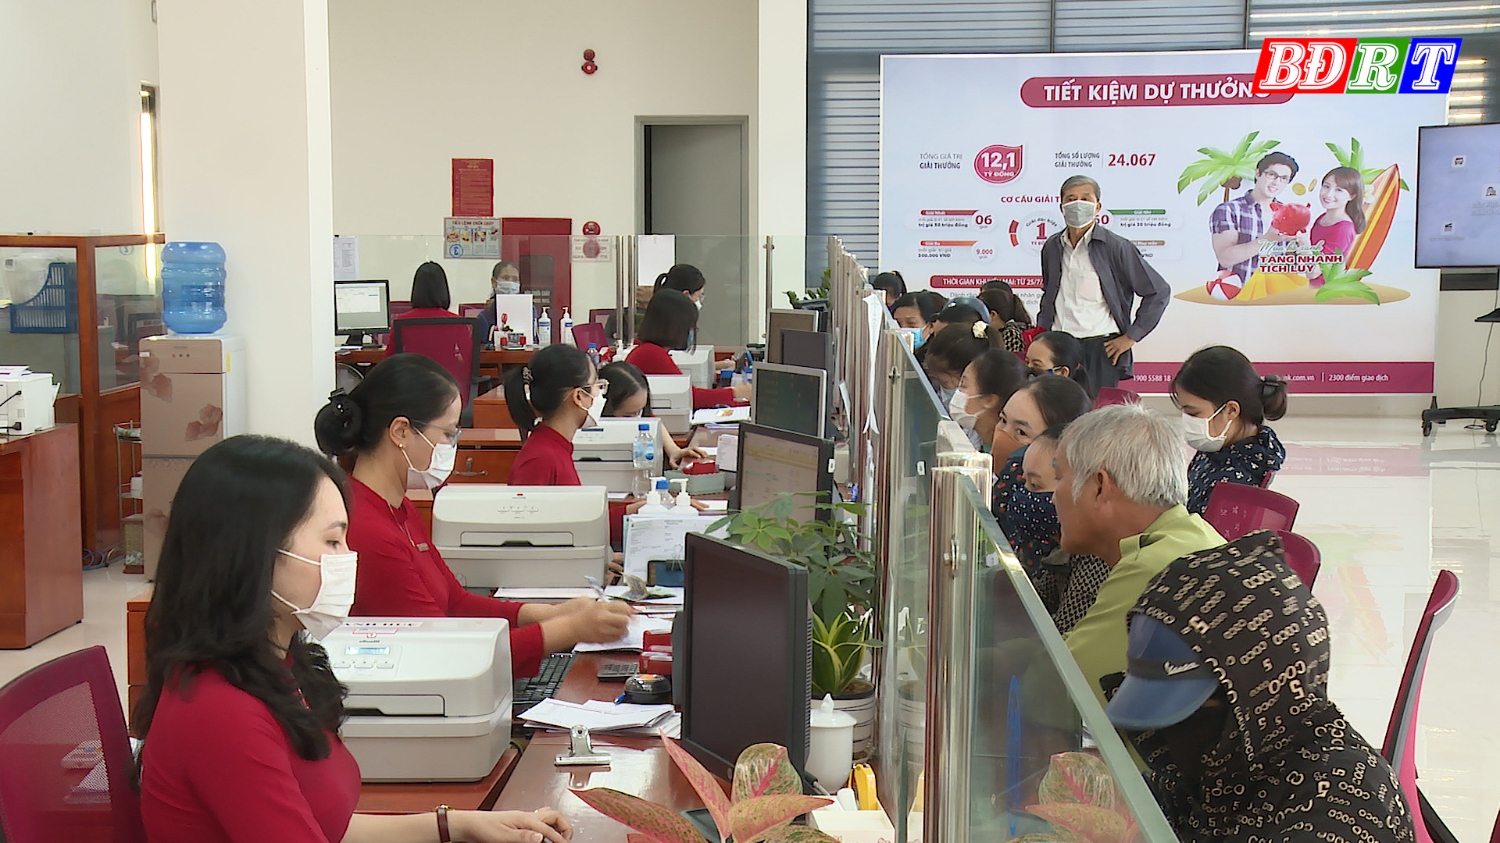 Agribank Chi nhánh Quảng Trạch Bắc Quảng Bình là “cầu nối” đưa nguồn vốn tín dụng đến với người dân, doanh nghiệp